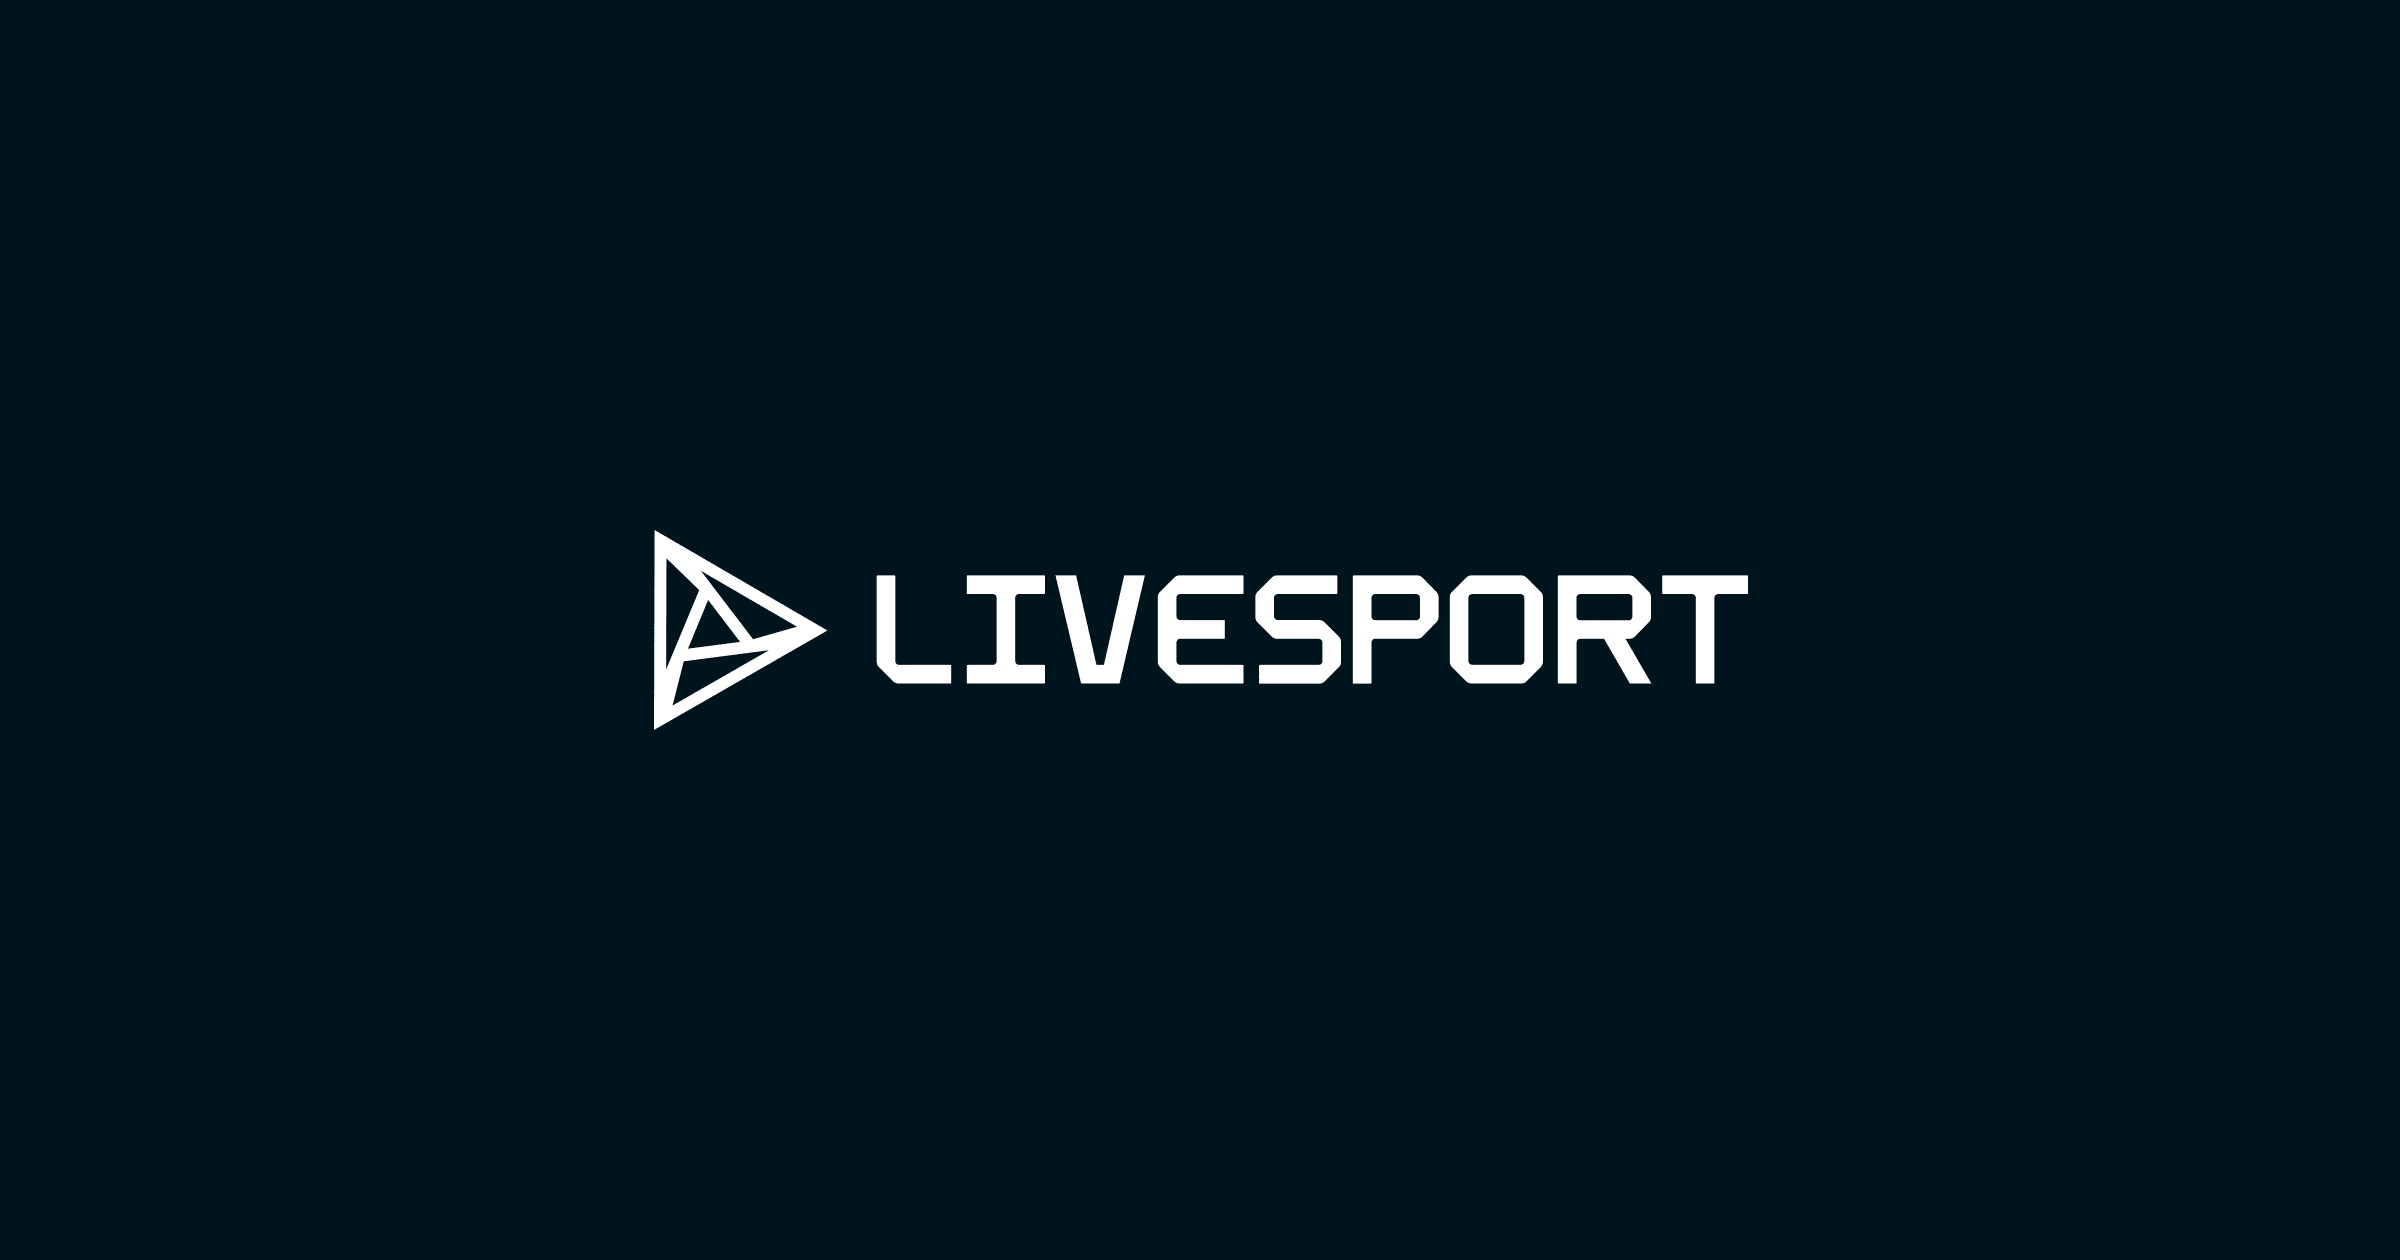 야구: 올림픽 2020 라이브 -결과, 일정, 순위 - Livesport.com